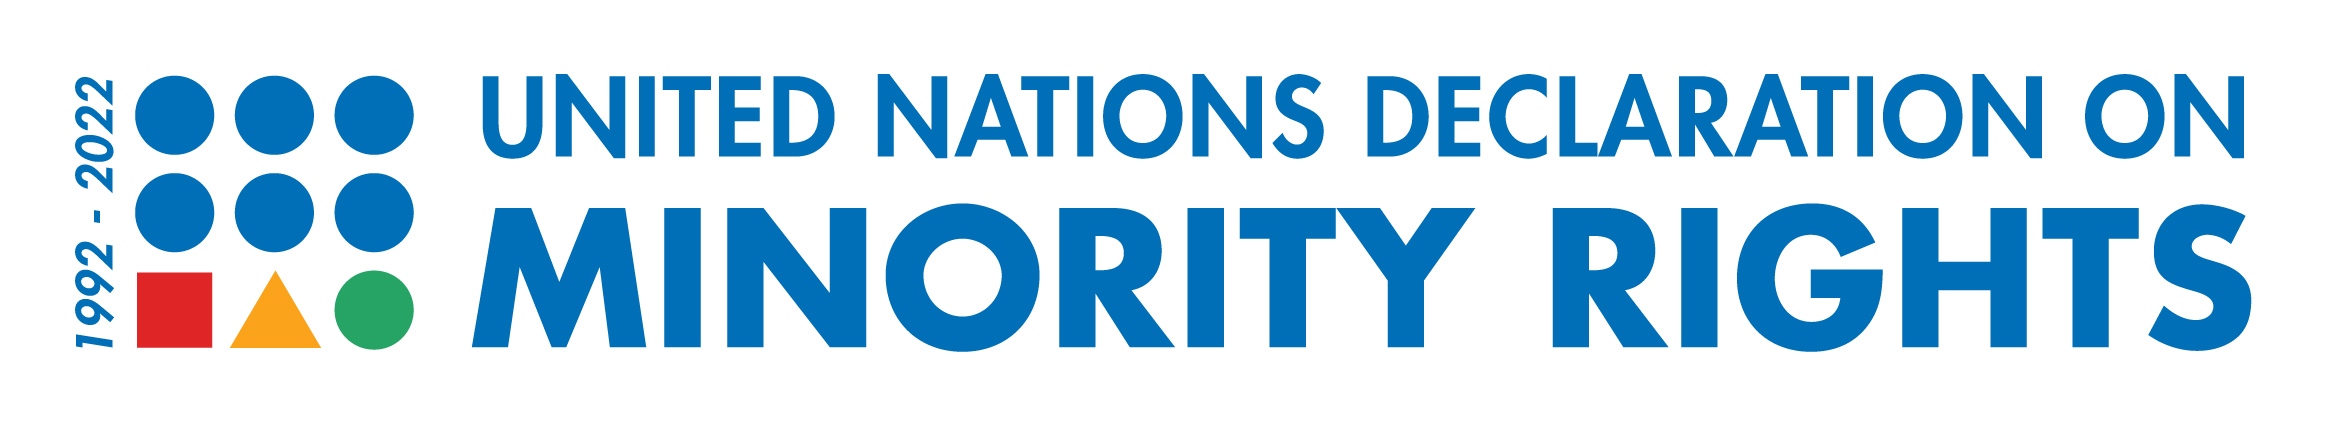 30º Aniversario - Adopción de la Declaración de la ONU sobre los Derechos de las Minorías